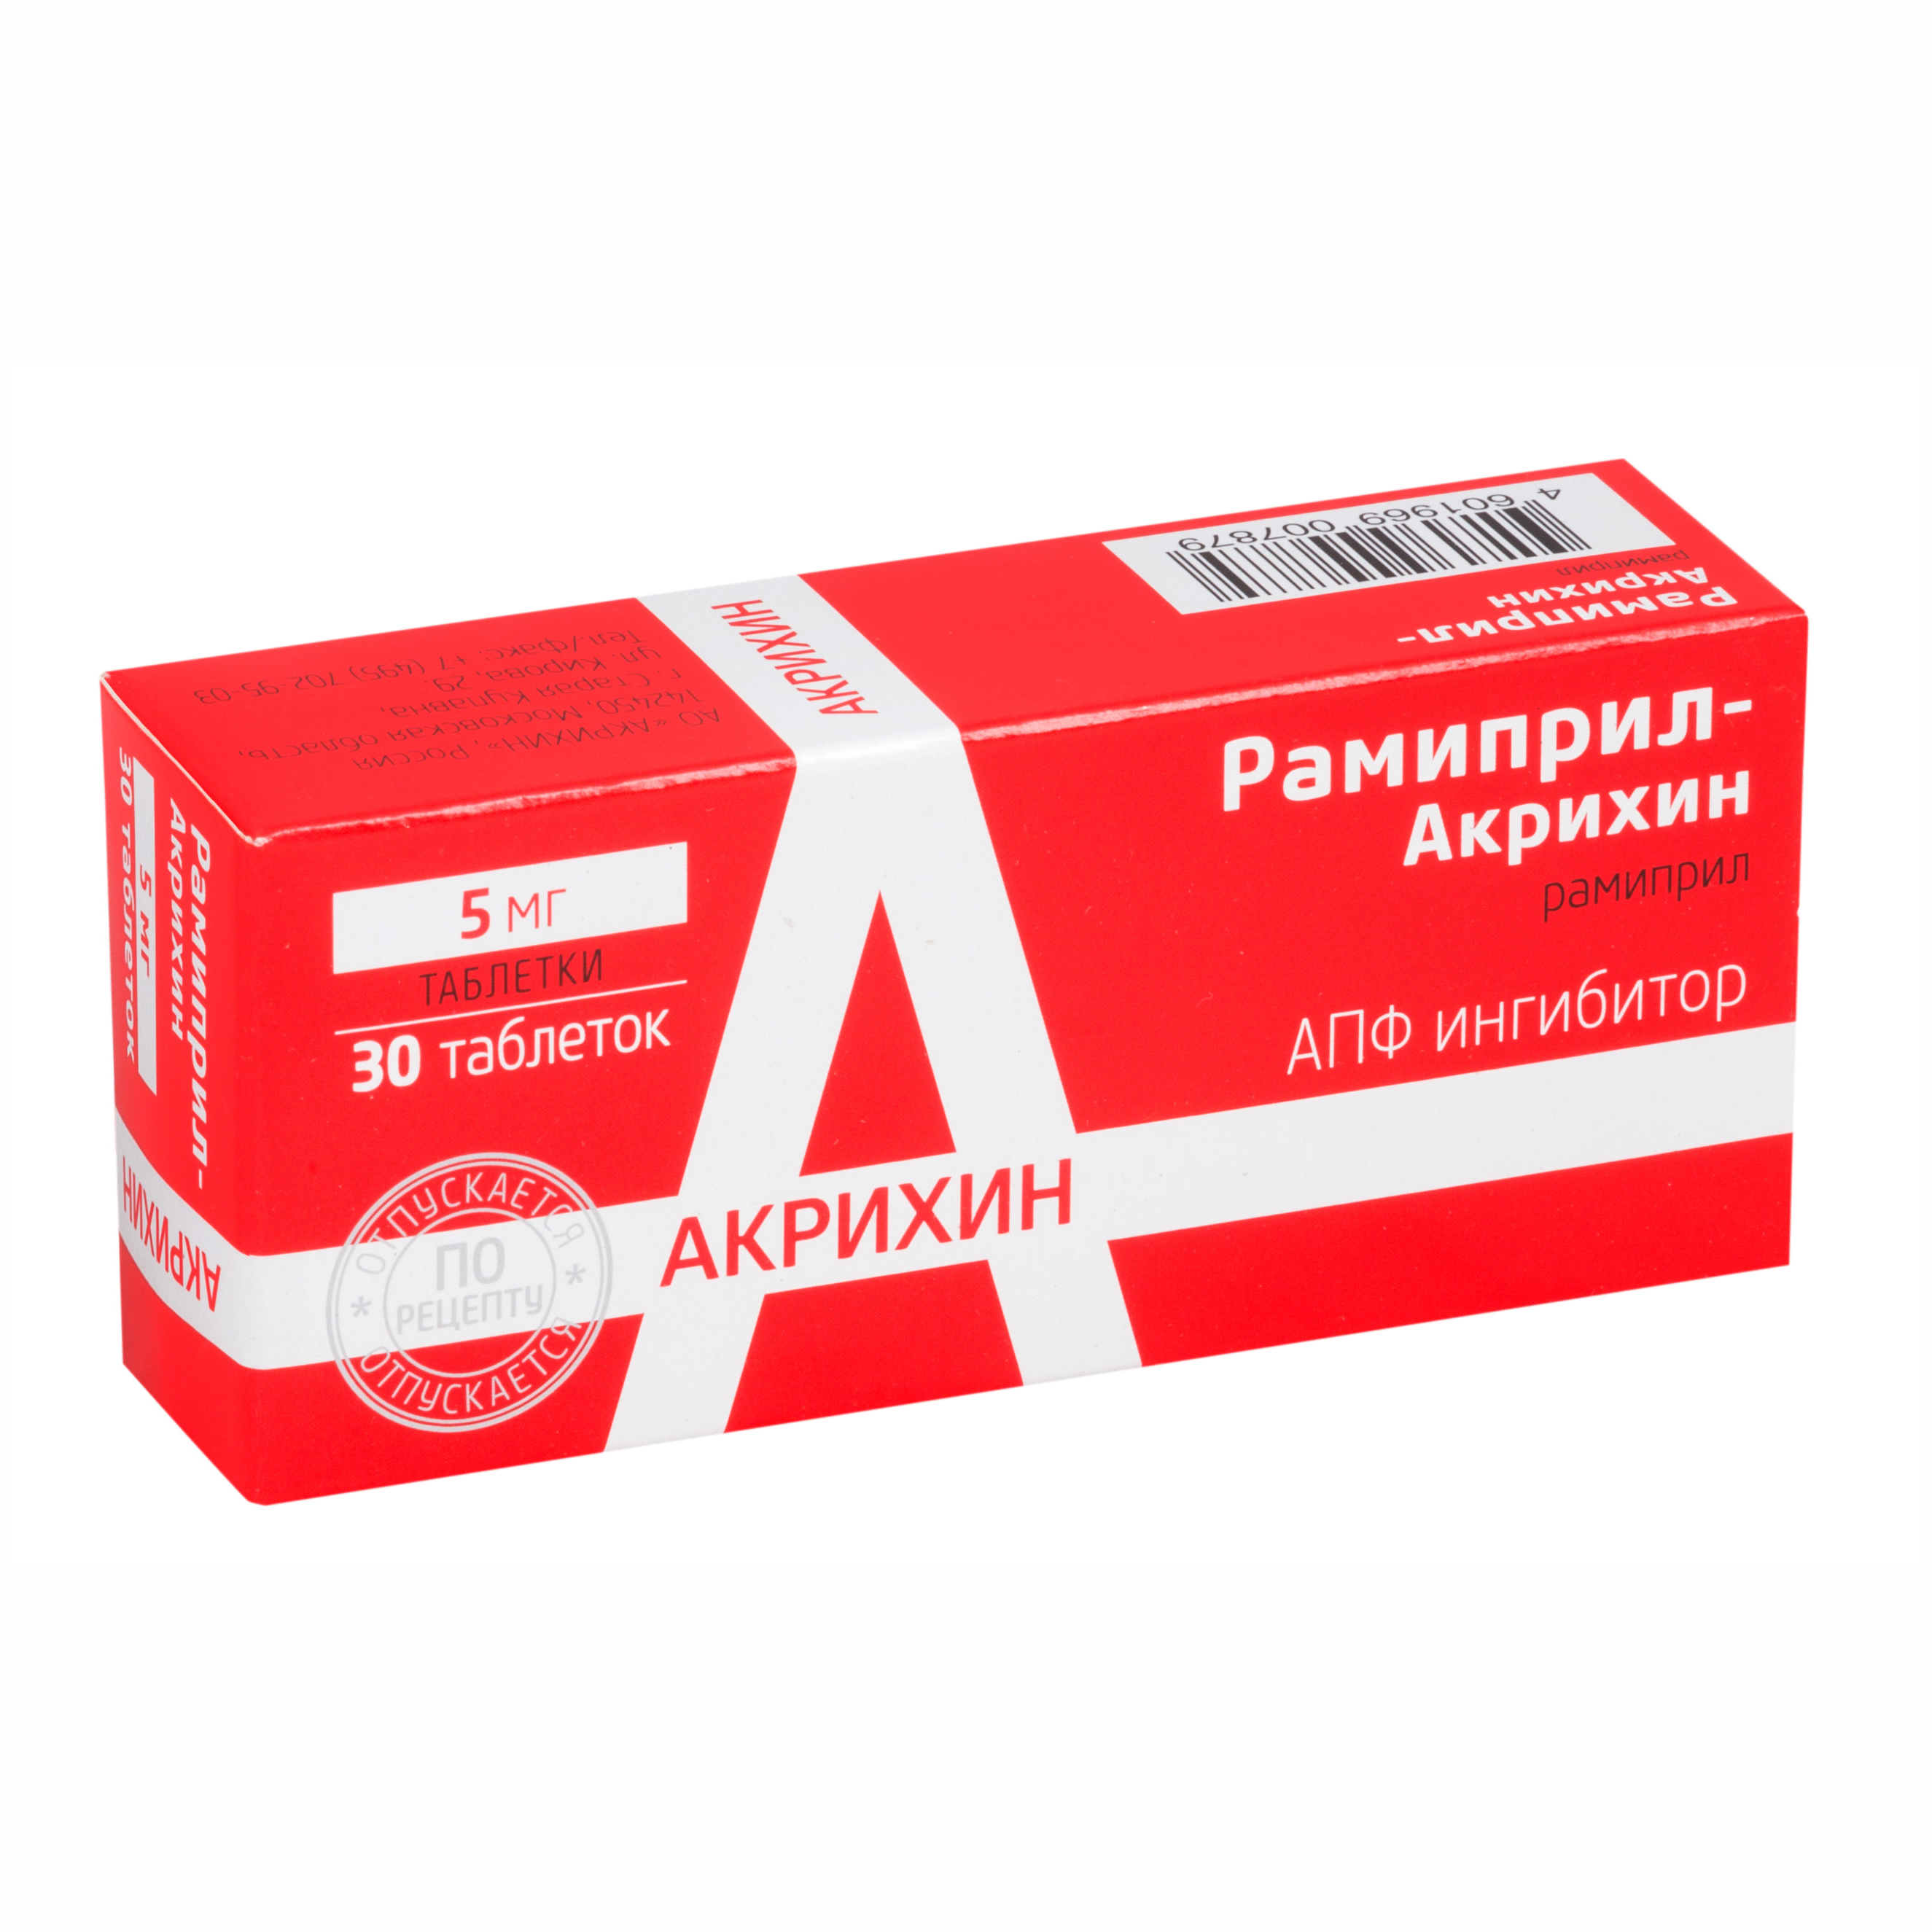 Рамиприл-акрихин таб 5мг N30 цена 102 руб ,  Рамиприл .